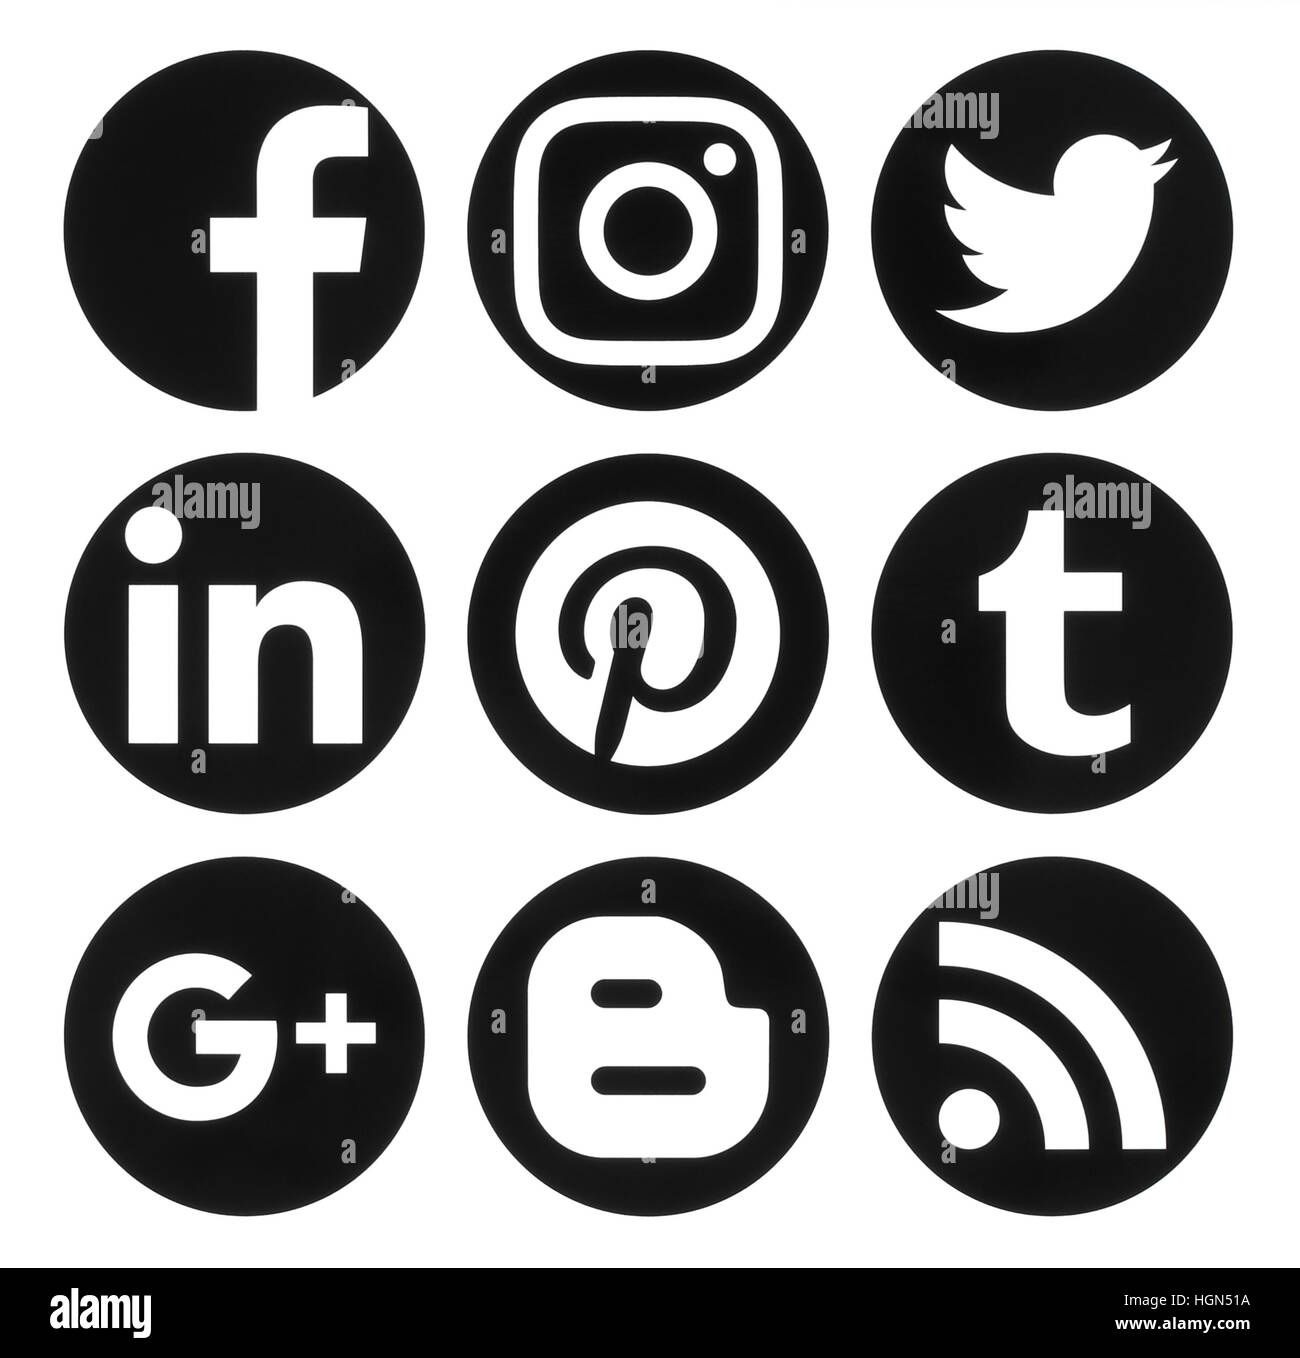 Kiev, Ucraina - 06 Settembre 2016: Raccolta di popolari cerchio nero social media logo stampato su carta:Facebook, Twitter, Google Plus, Instagram, Foto Stock